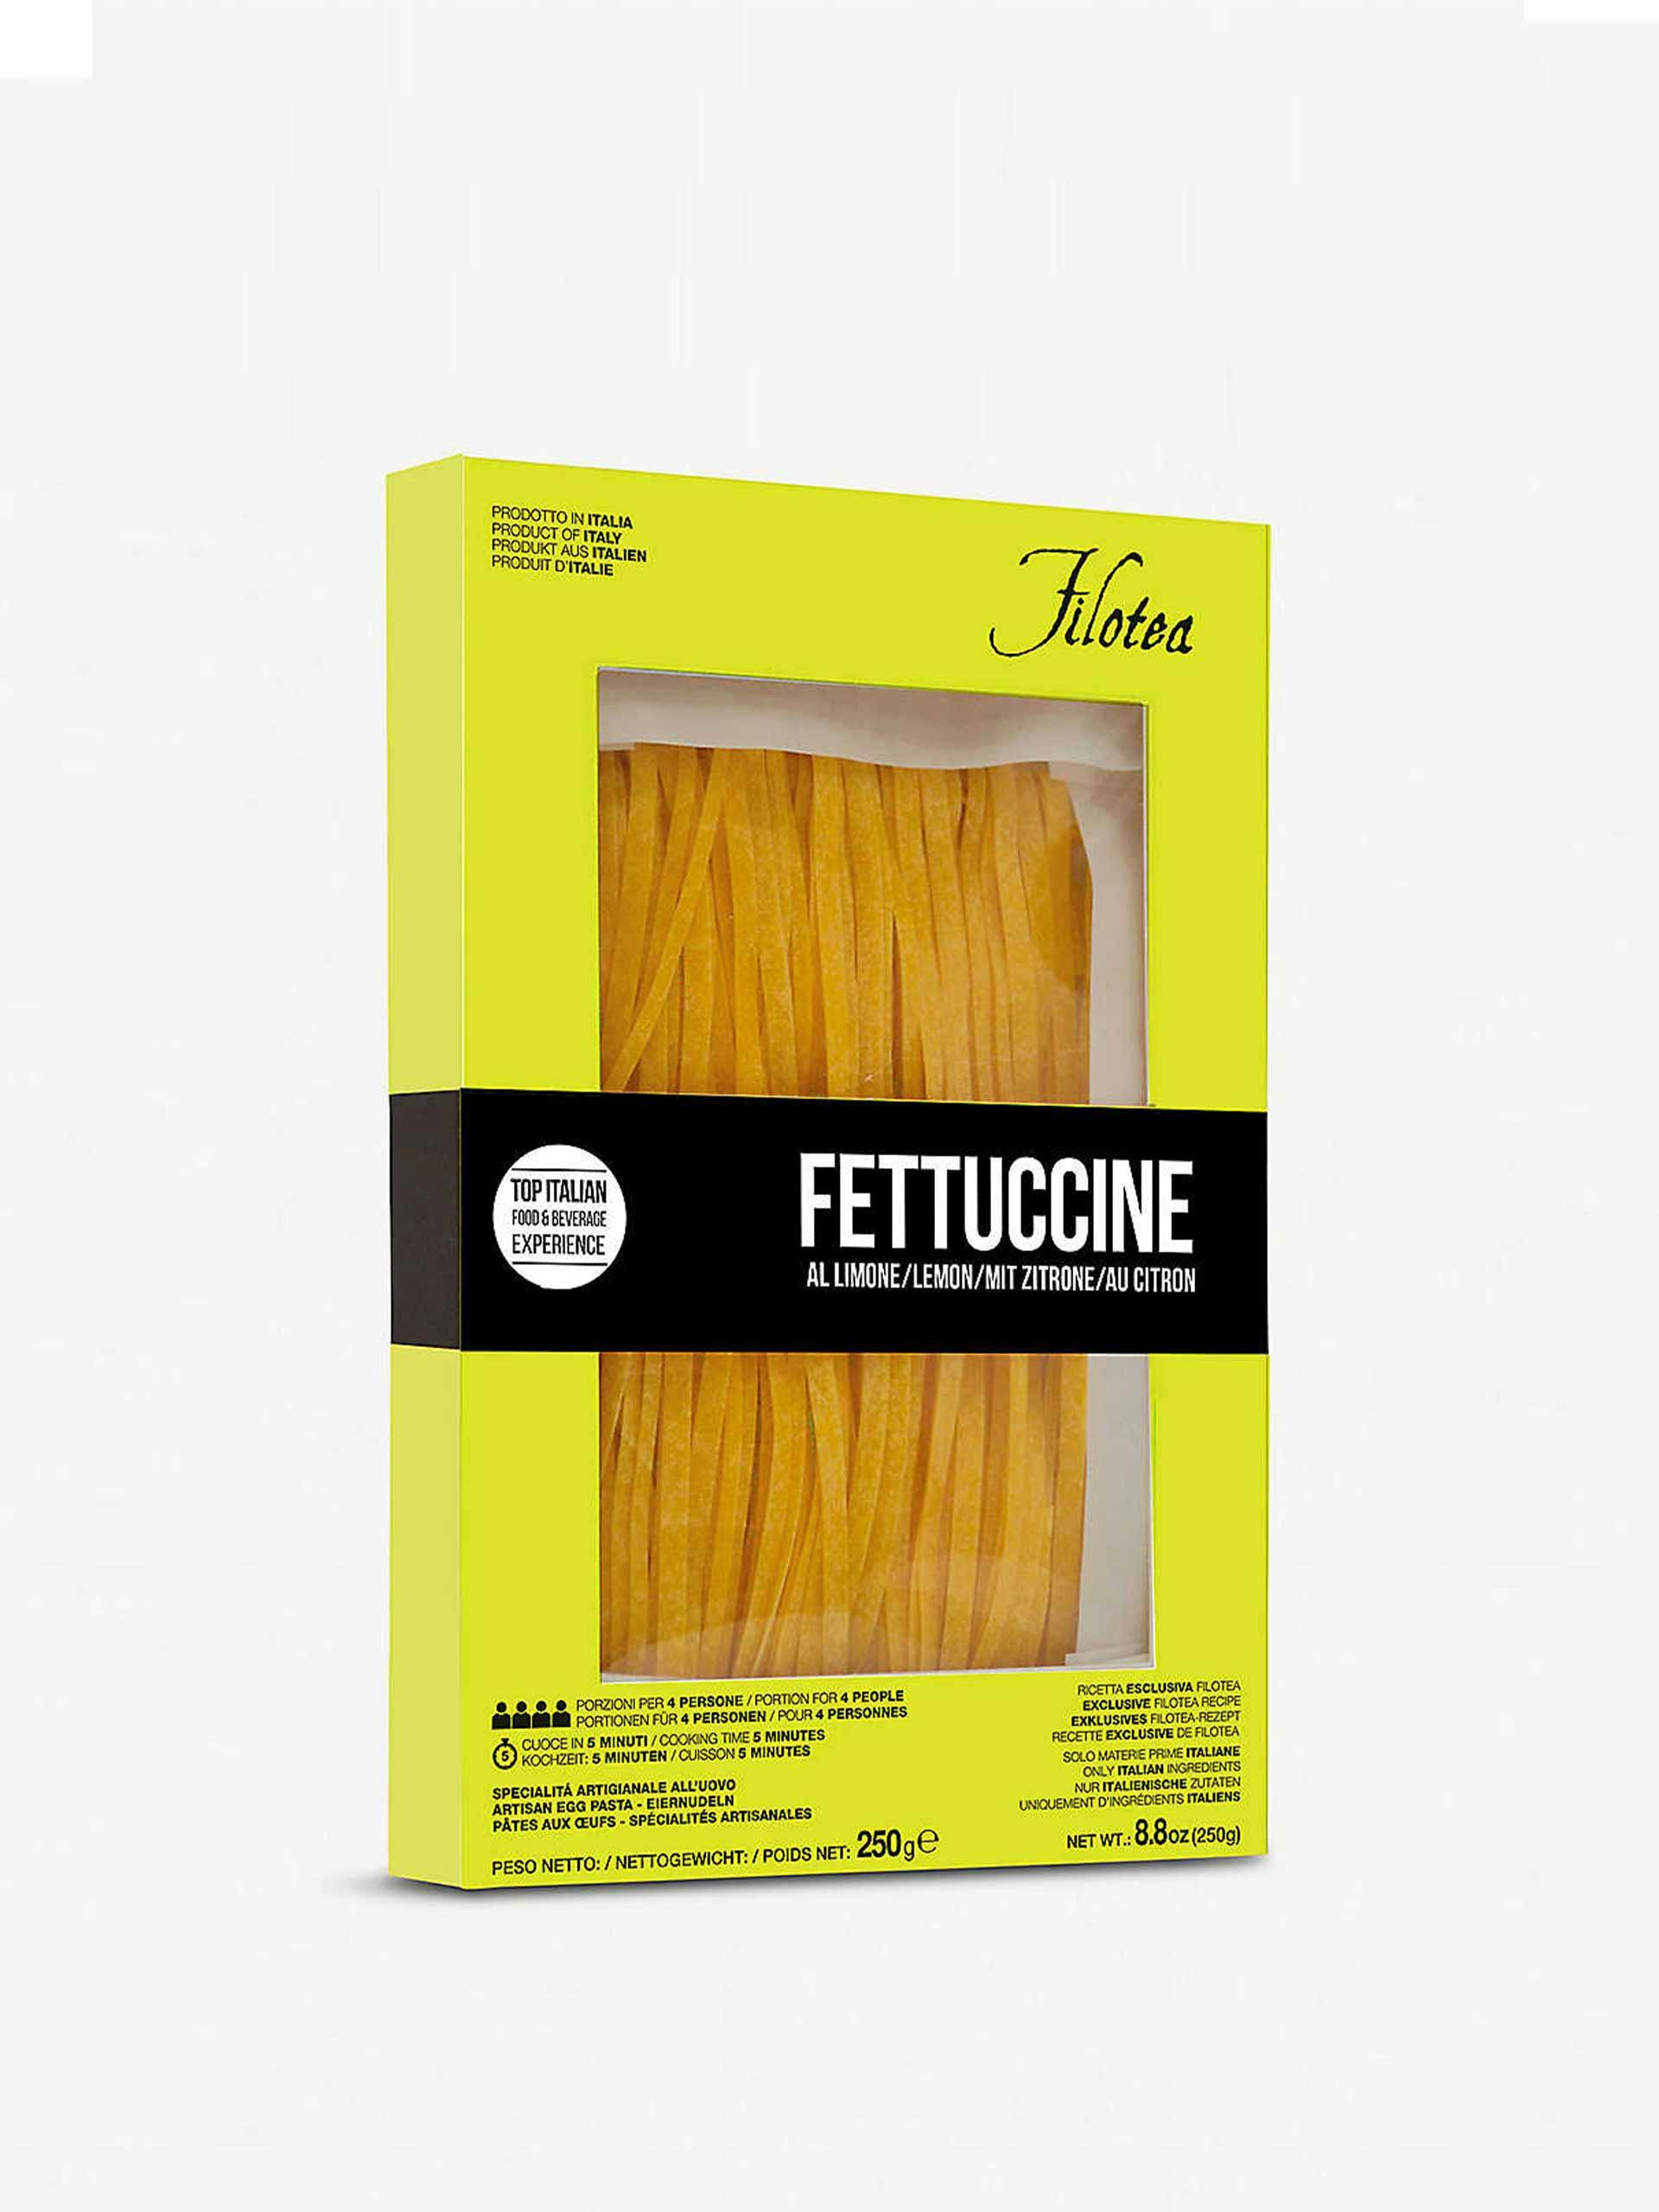 Lemon fettuccine pasta